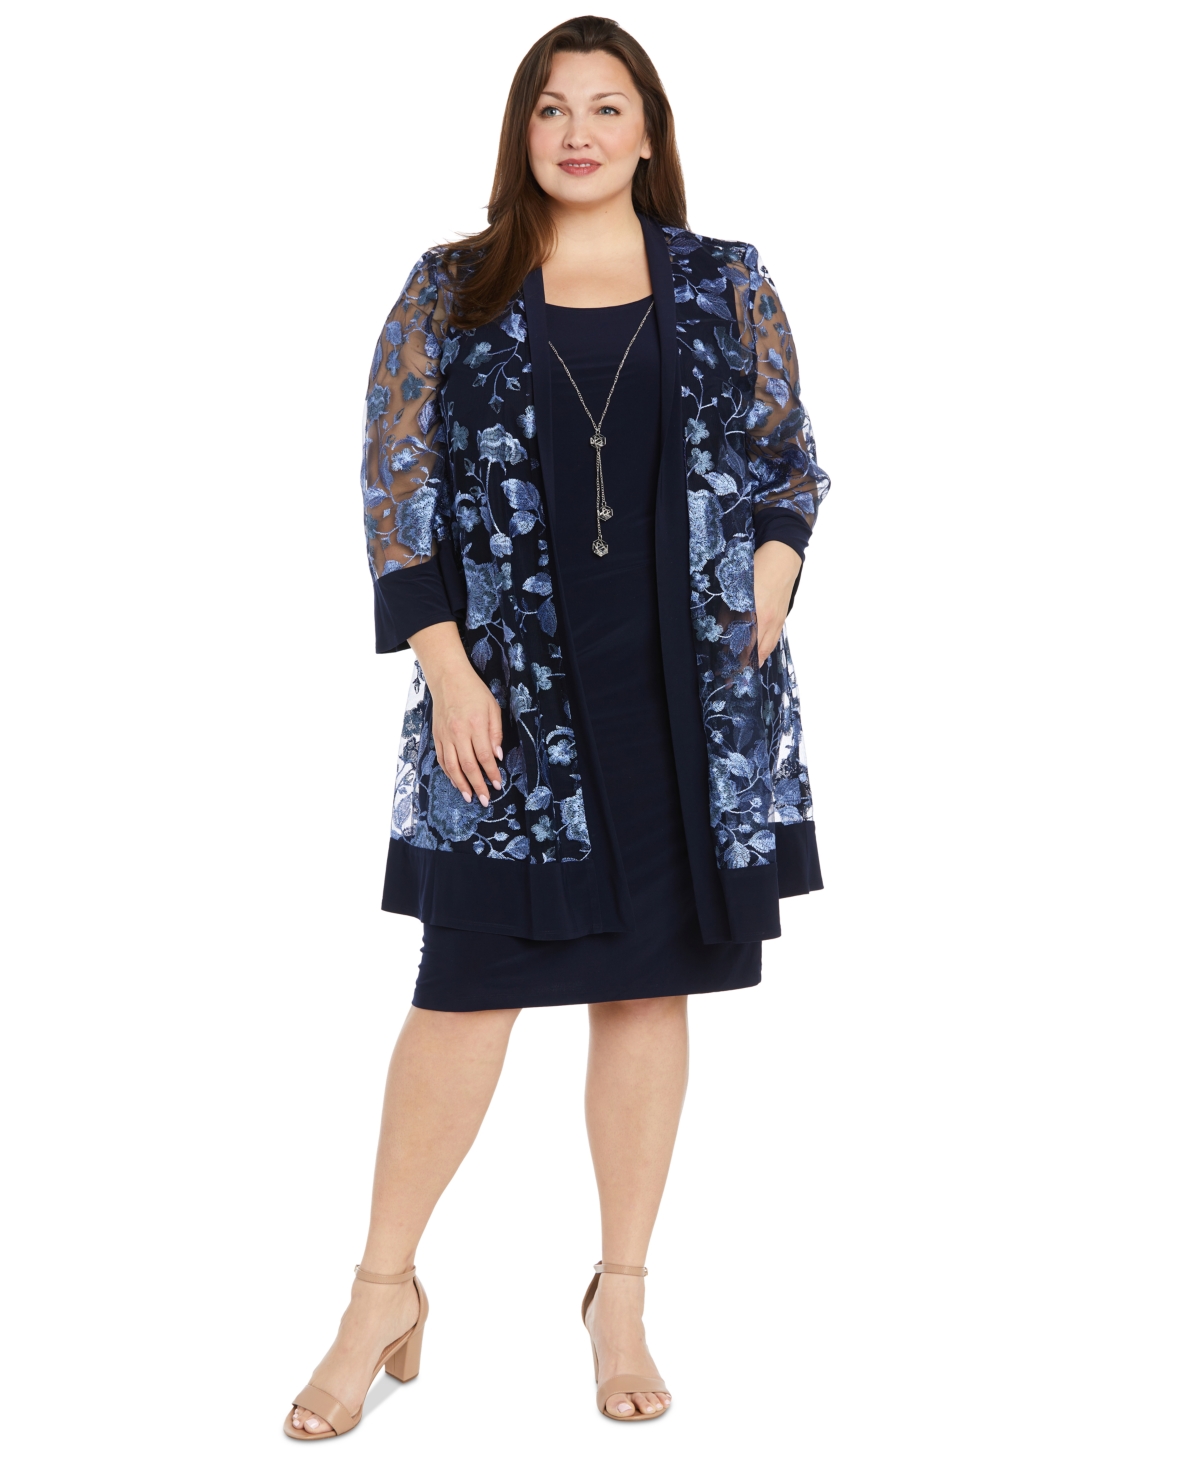 Plus Size Floral Jacket & Necklace Dress - Navy/Periwinkle